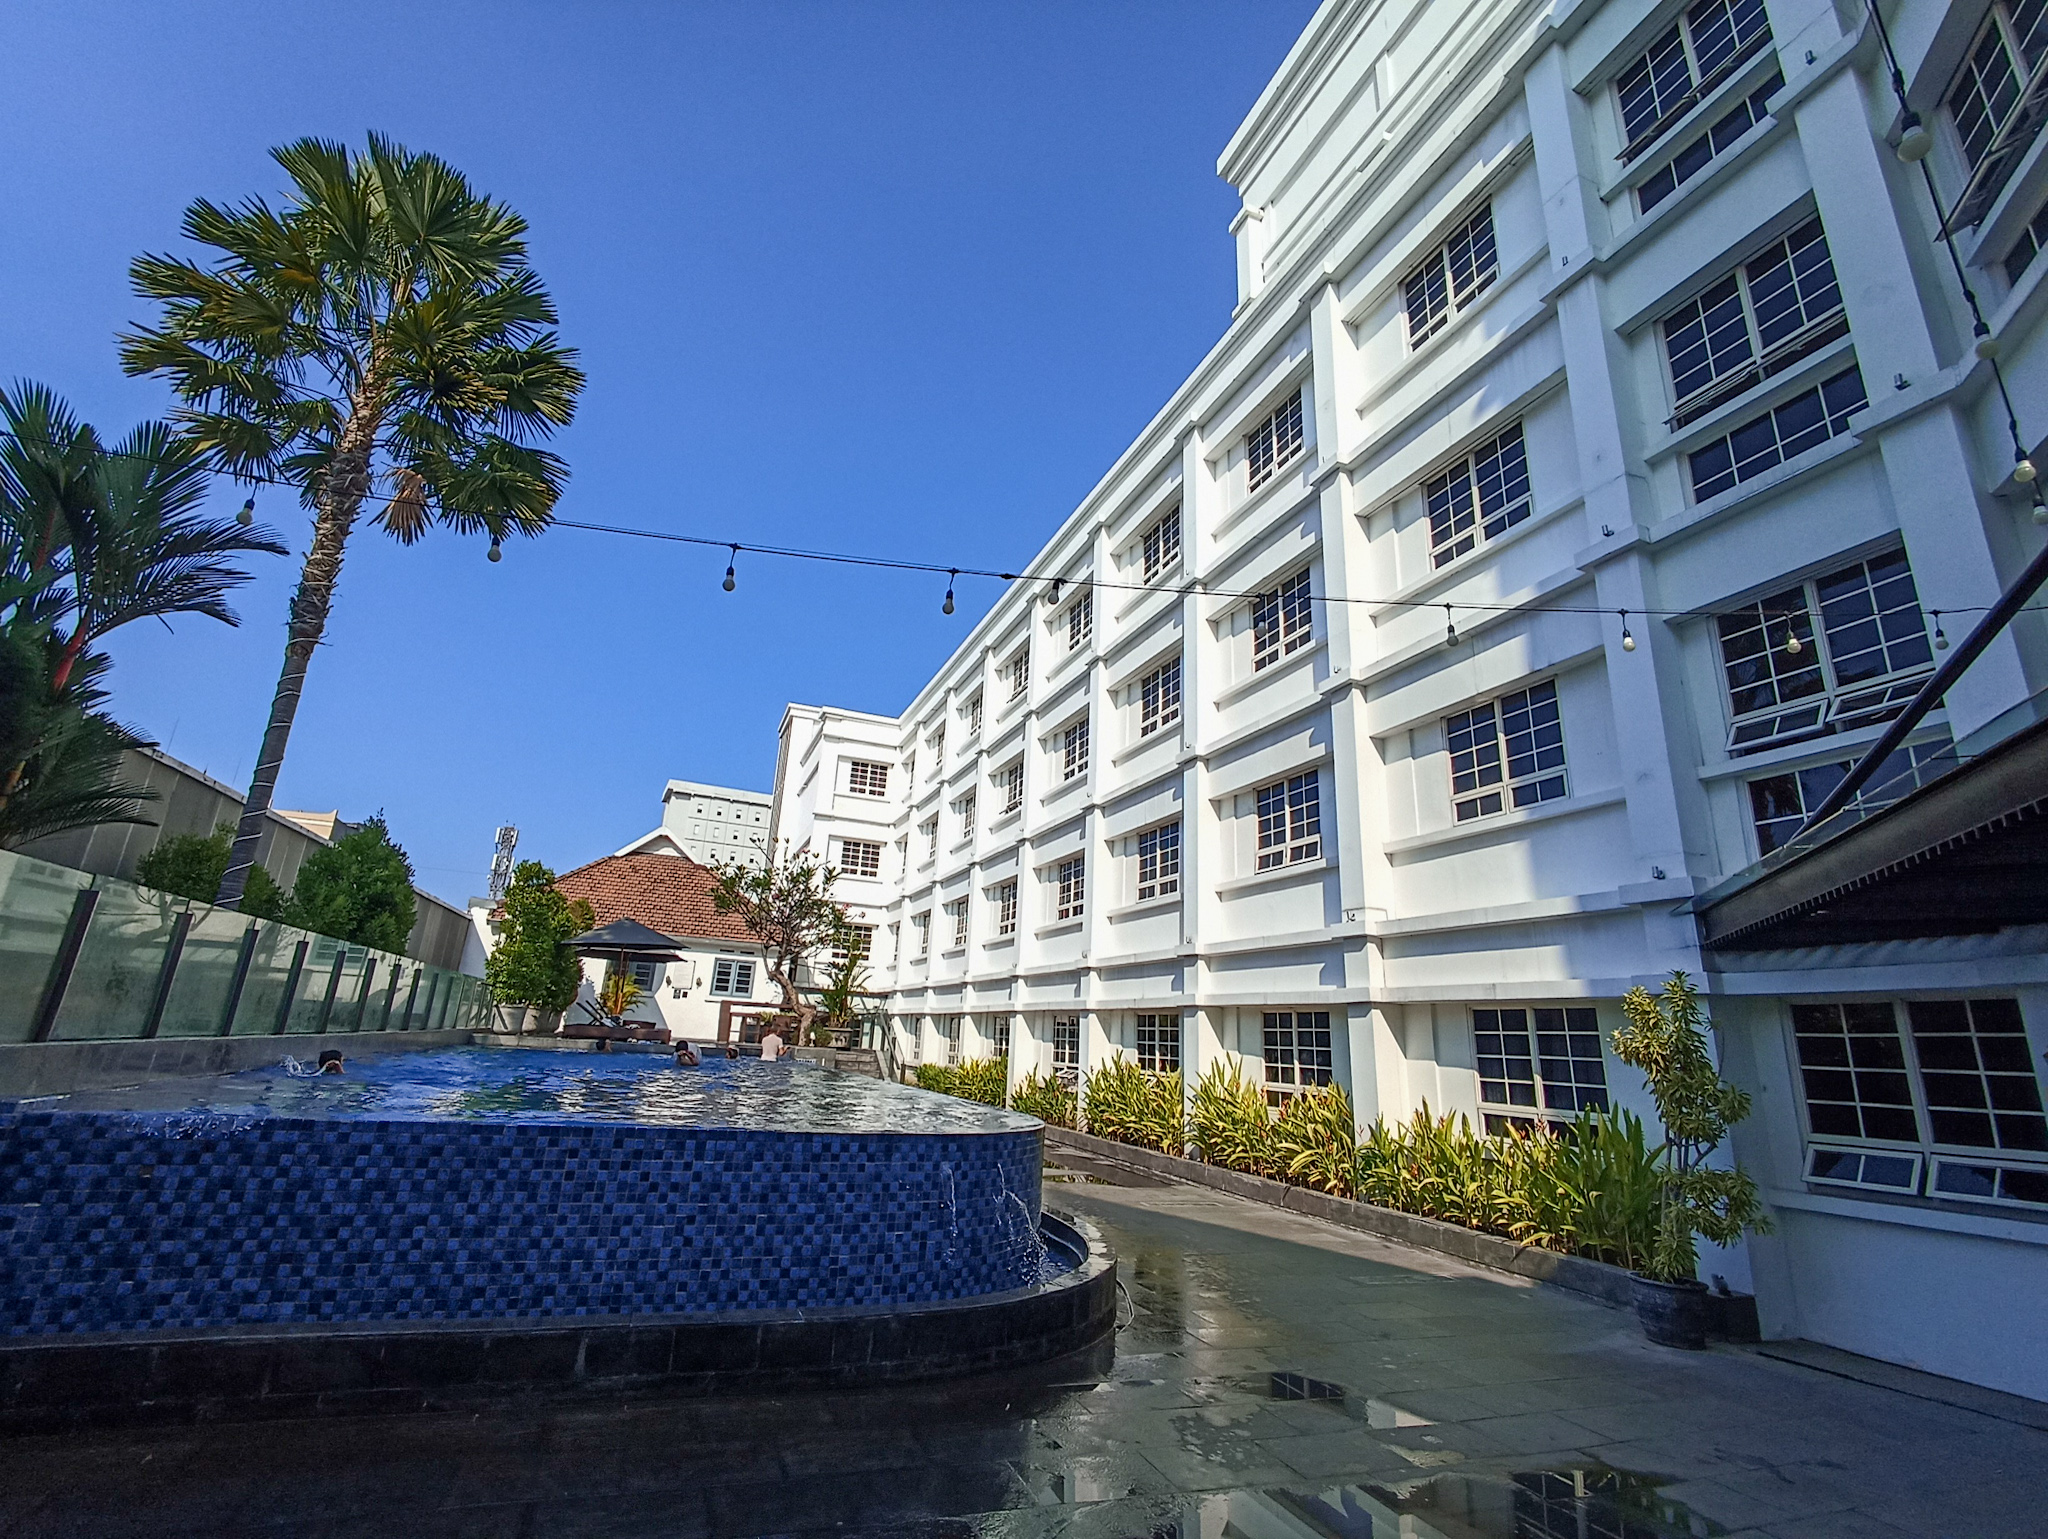 Yang Terbaik di Ajang Surabaya Tourism Awards 2023: Menjaga Warisan Sejarah  dalam Keindahan Hotel Kokoon (16)